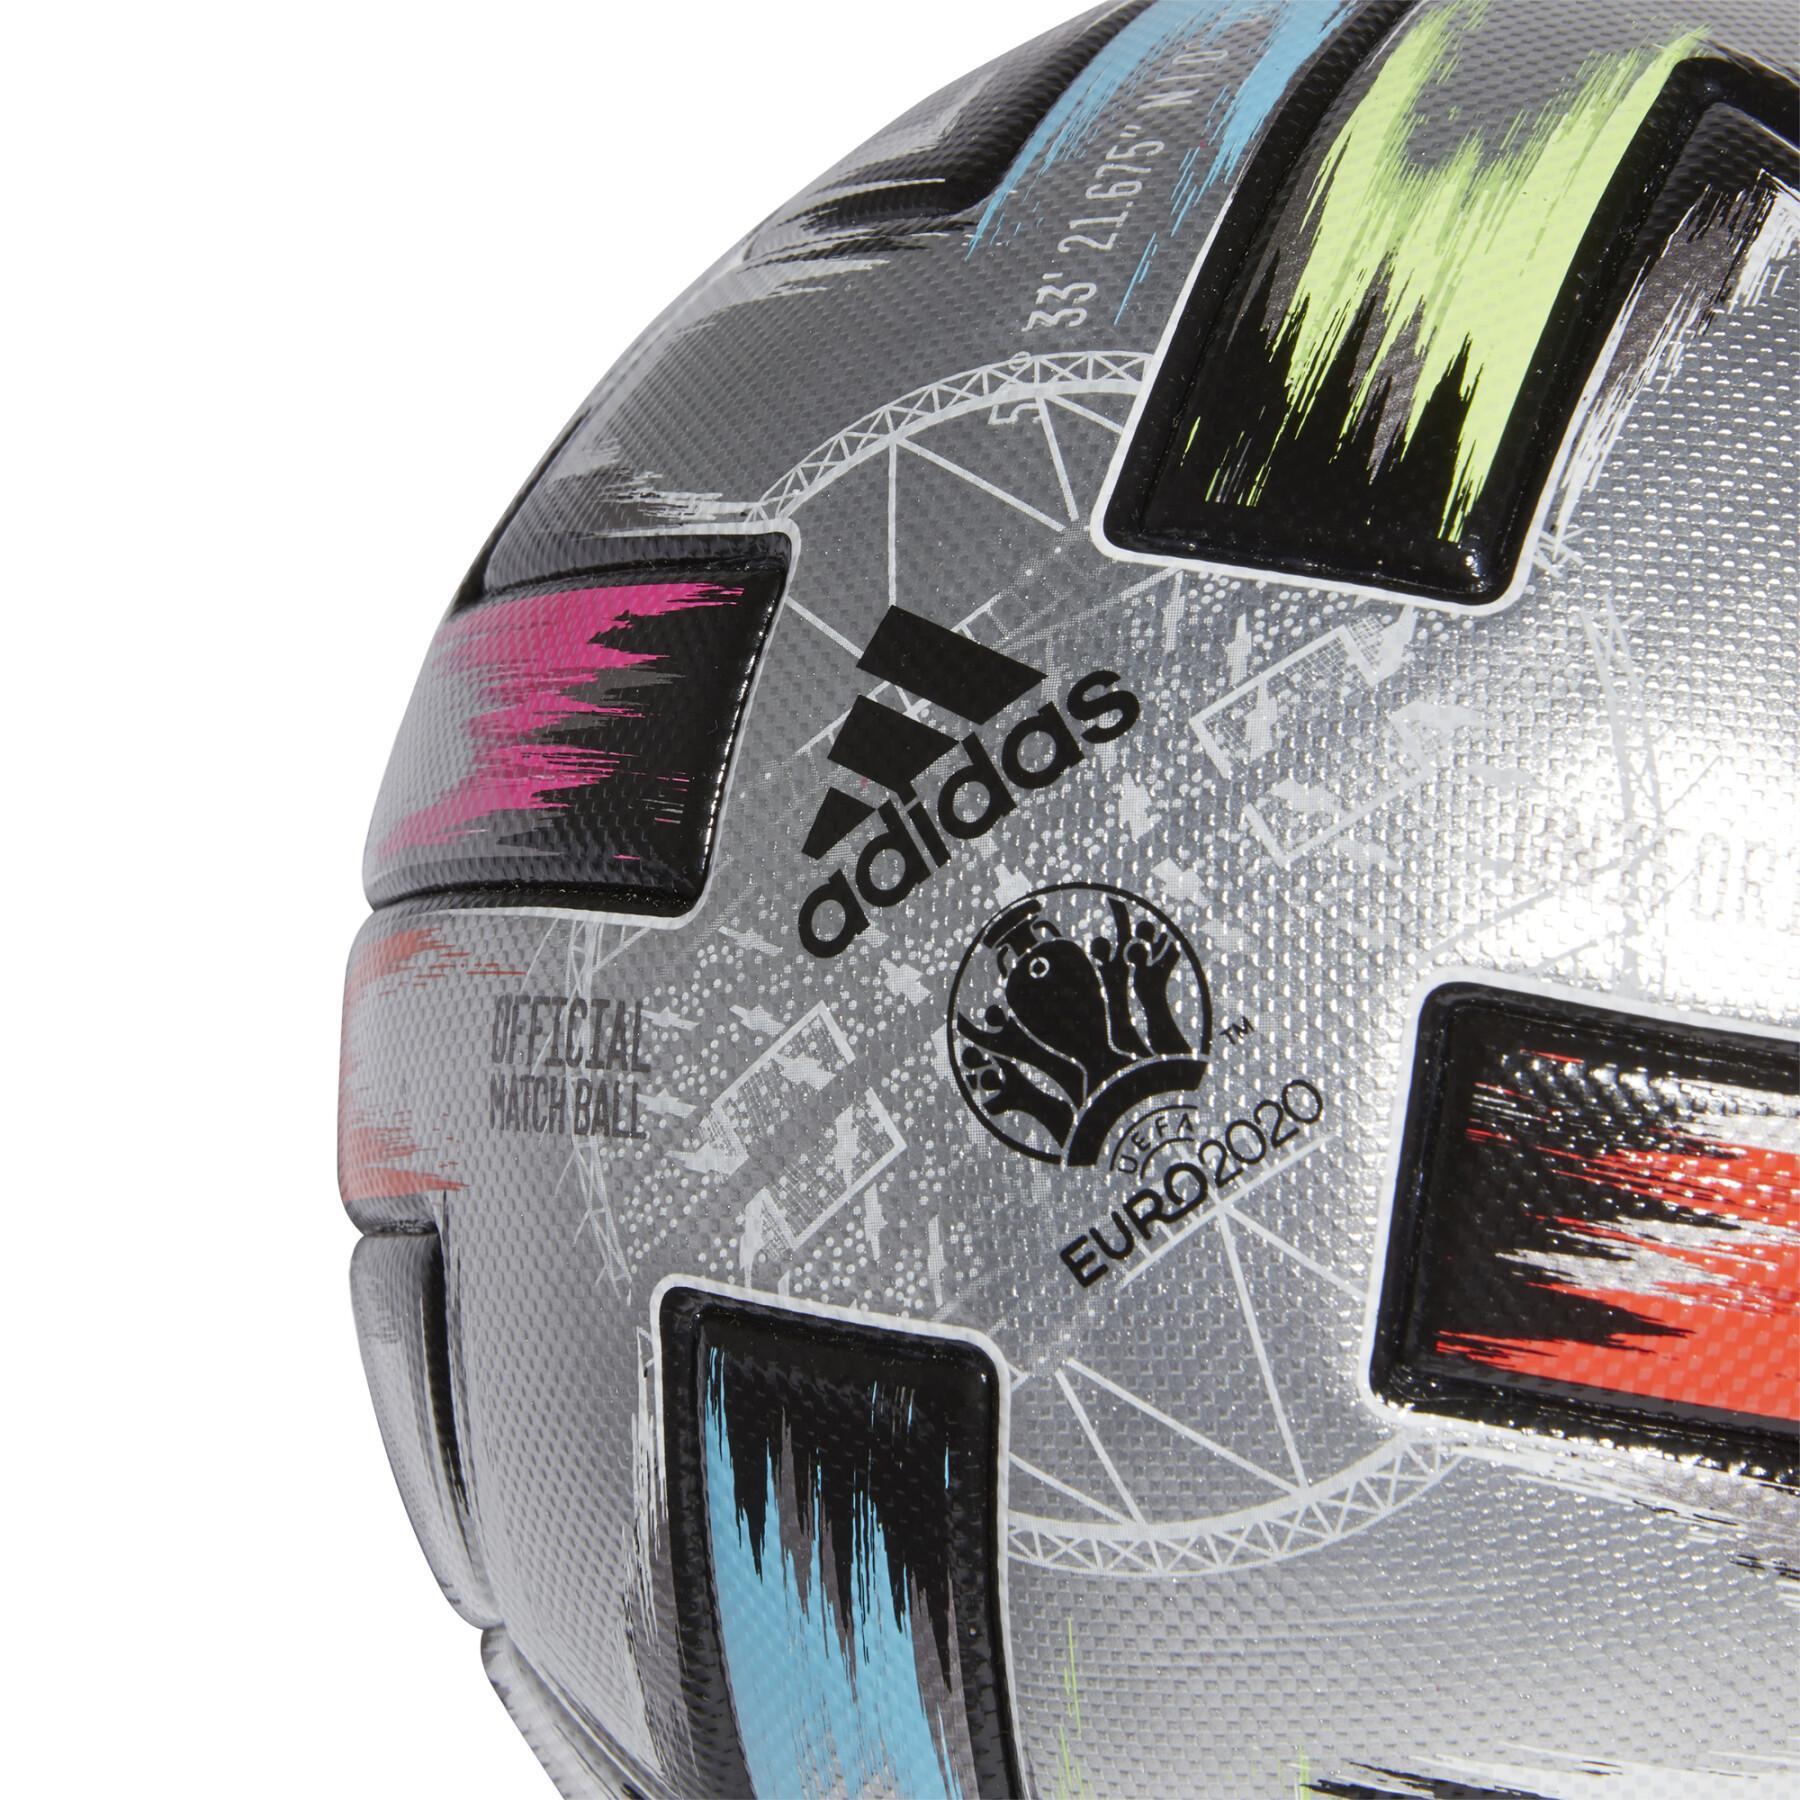 Ballon de football adidas Uniforia Finale Pro